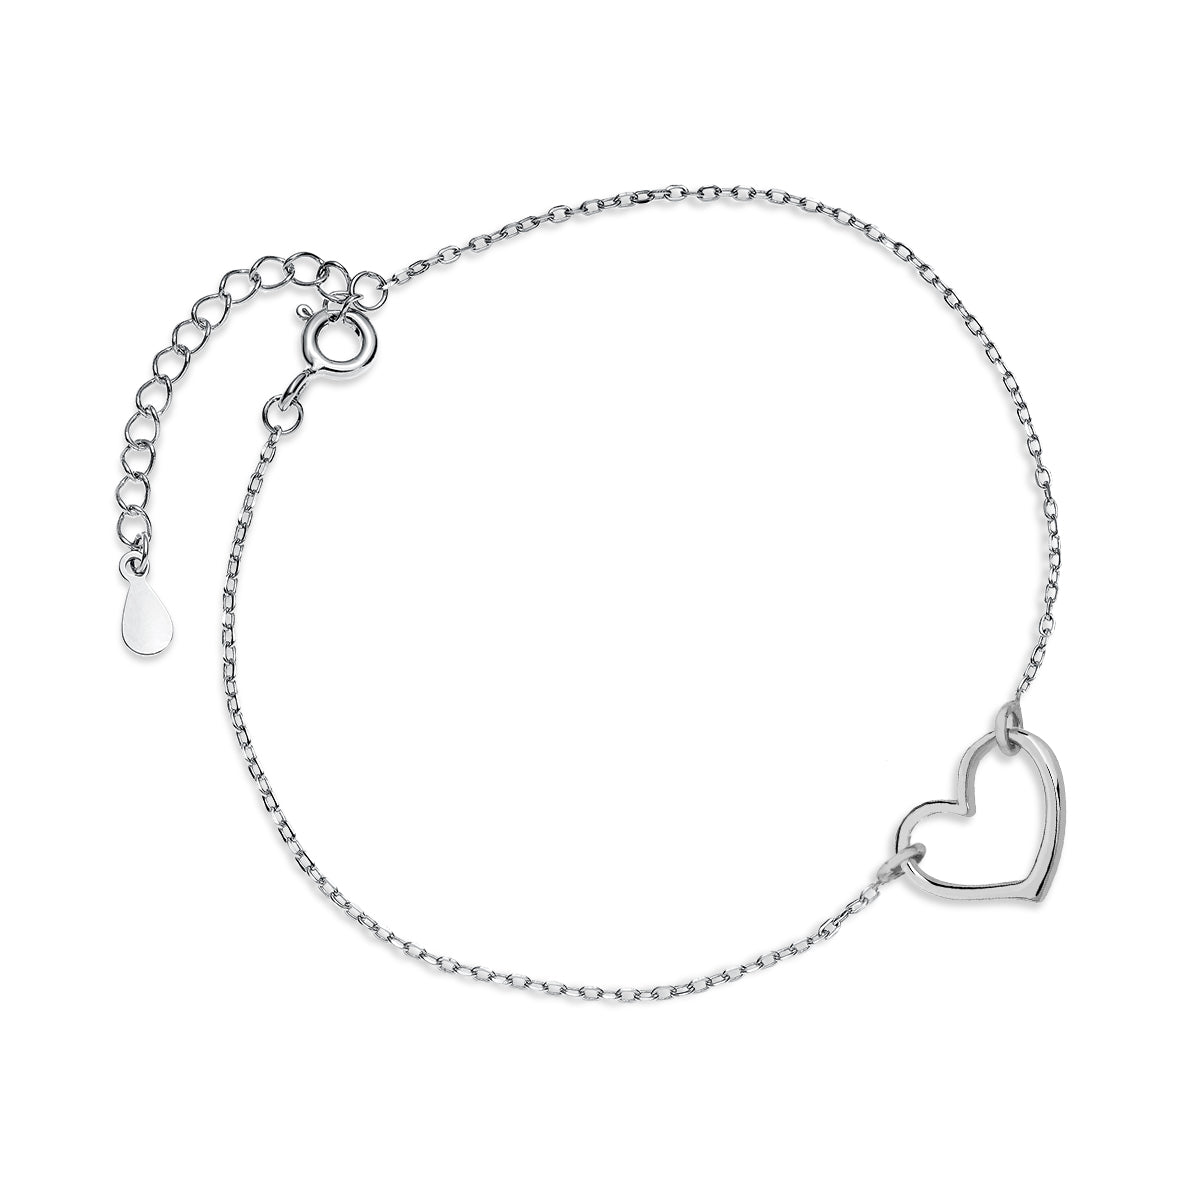 Sterling silver Open Heart Bracelet